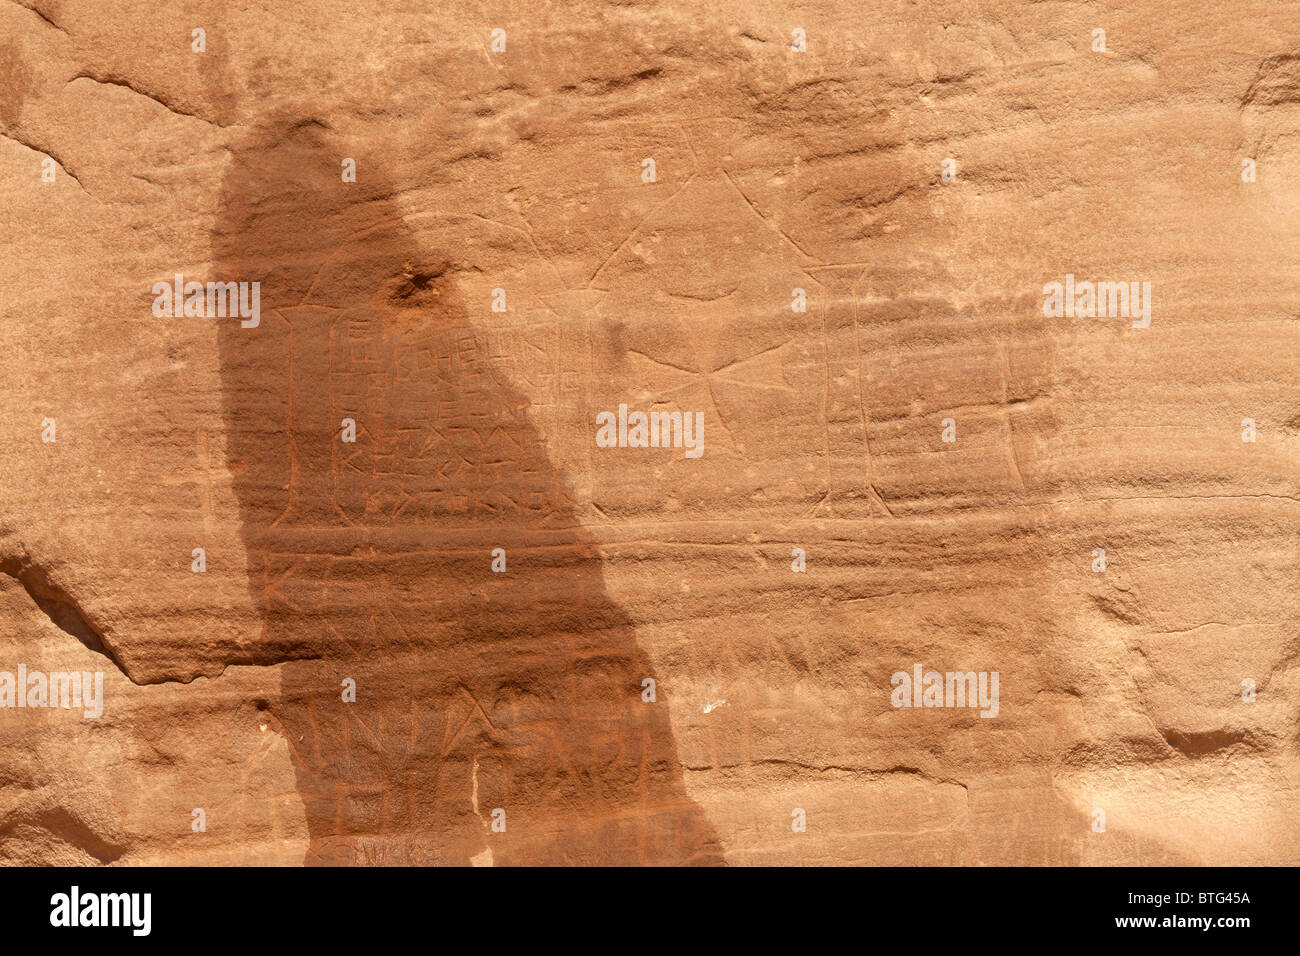 Rock of Inscriptions in the desert near Ain Khudra Oasis, Sinai, Egypt, Africa Stock Photo